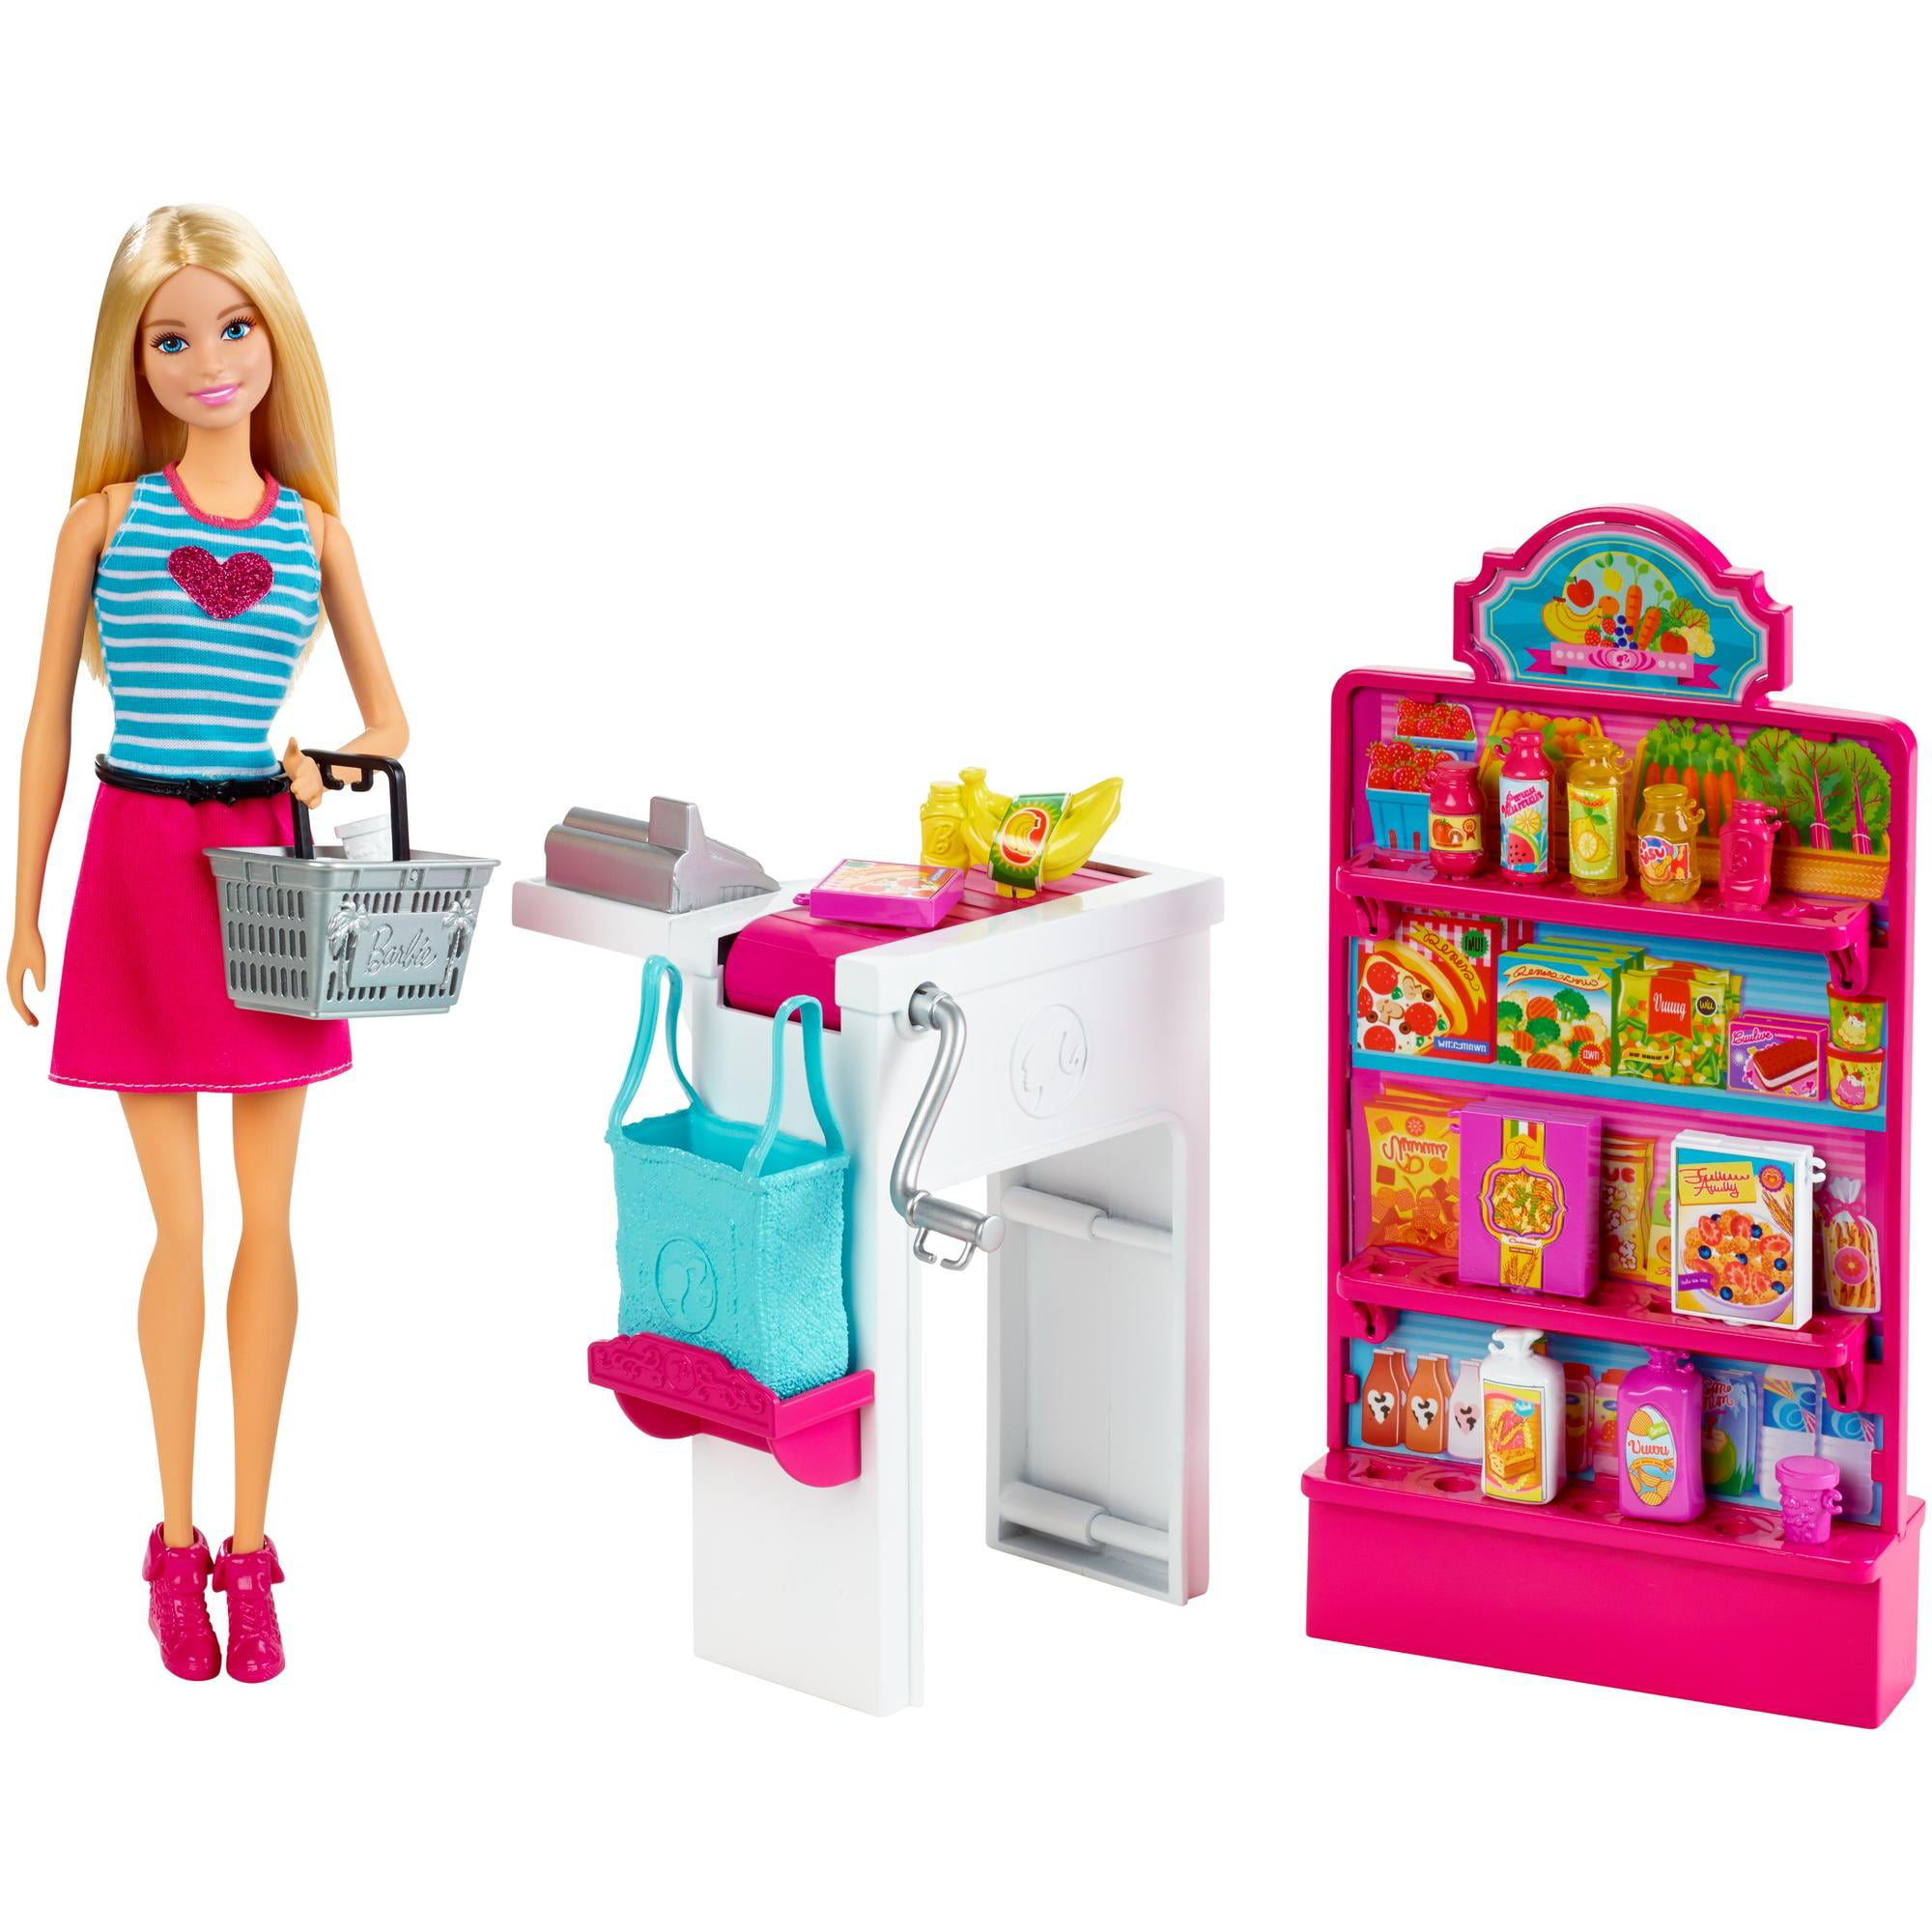 Куклы недорогие магазинов. Набор Barbie продуктовый магазин Малибу, 29 см, ckp77. Barbie Malibu набор. Куклы Барби плейсет. Игровой набор Barbie продуктовая Лавка.